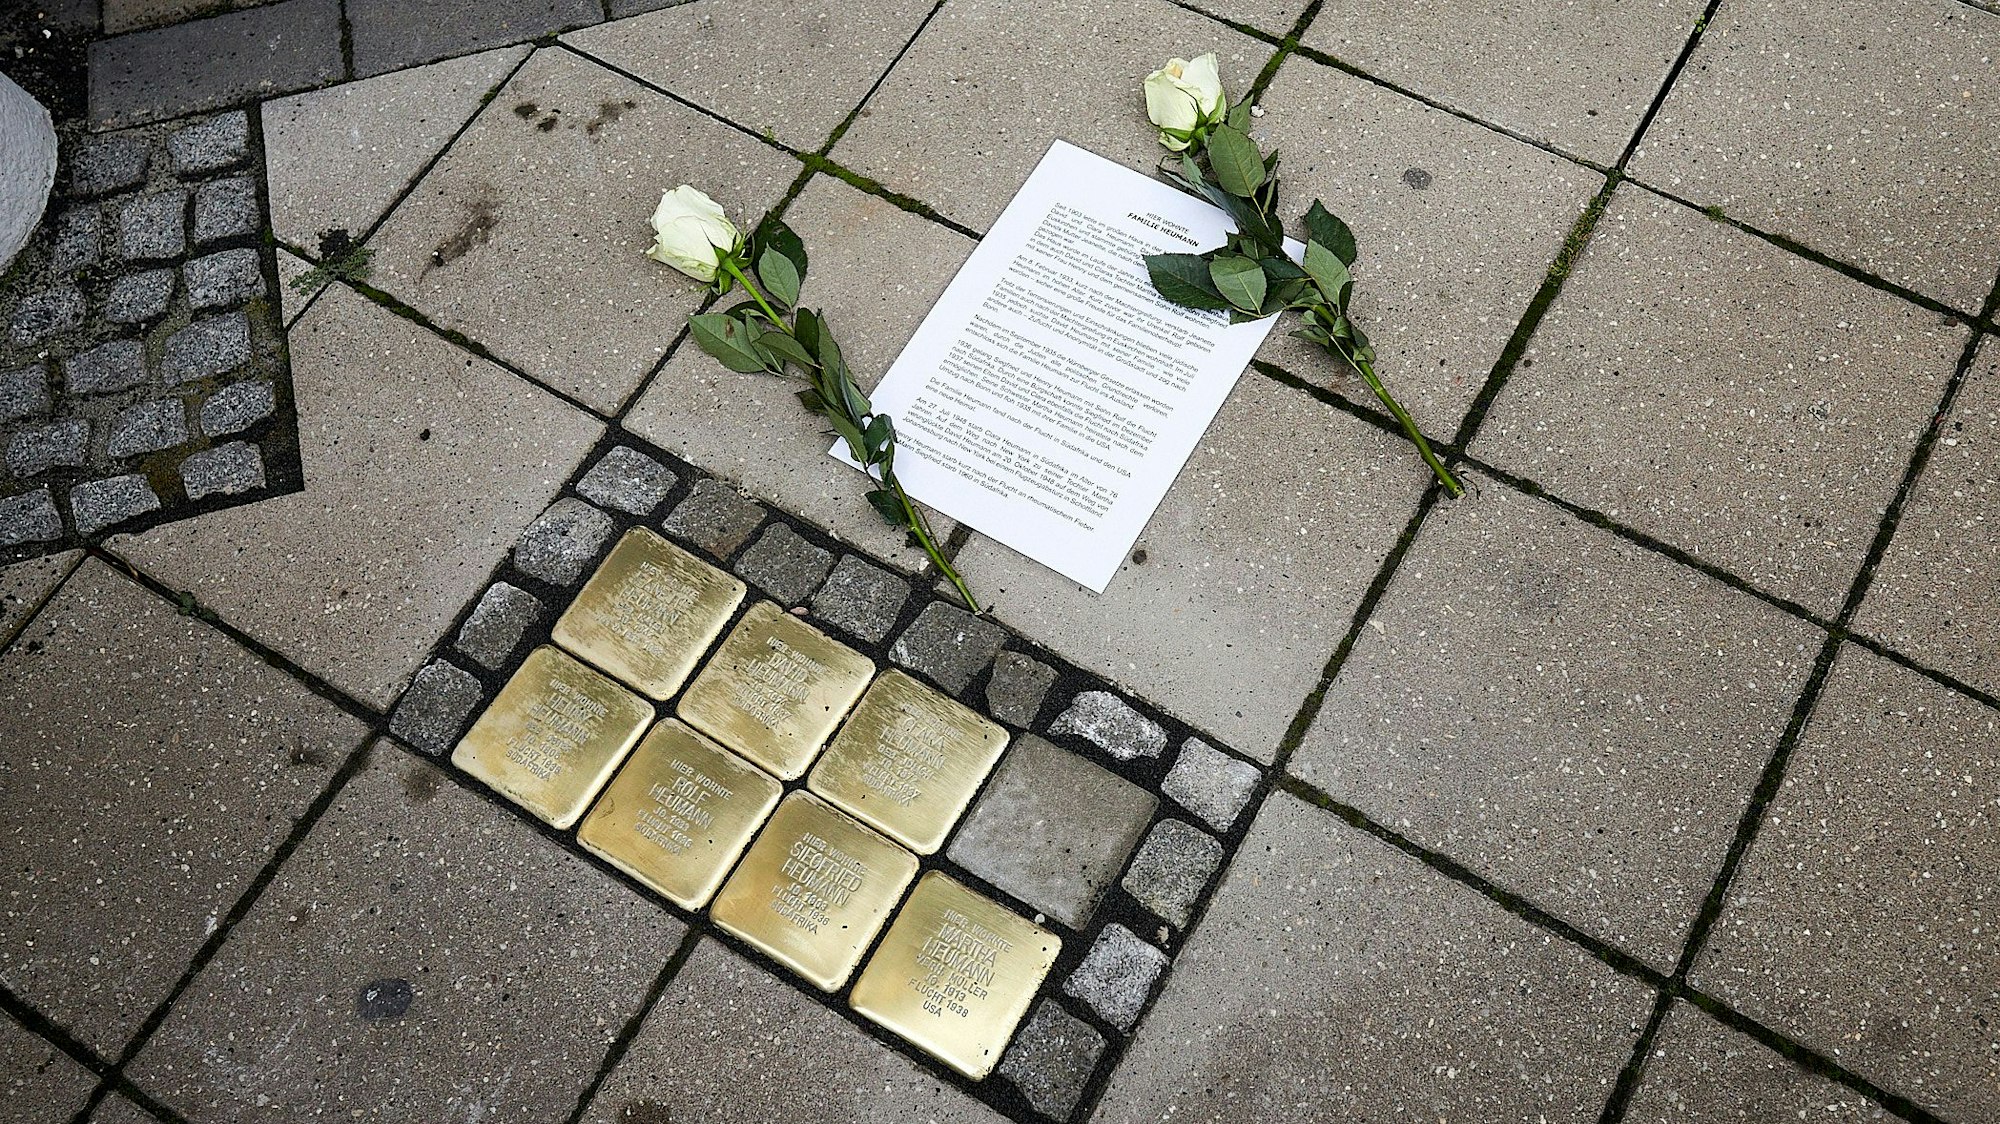 Sieben messingfarbene Stolpersteine sind ins Pflaster eingelassen. Zwei weiße Rosen sind zum Gedenken an die NS-Opfer niedergelegt worden. Auf einem DIN-A4 Blatt ist das Schicksal der Familie beschrieben, an die erinnert wird.